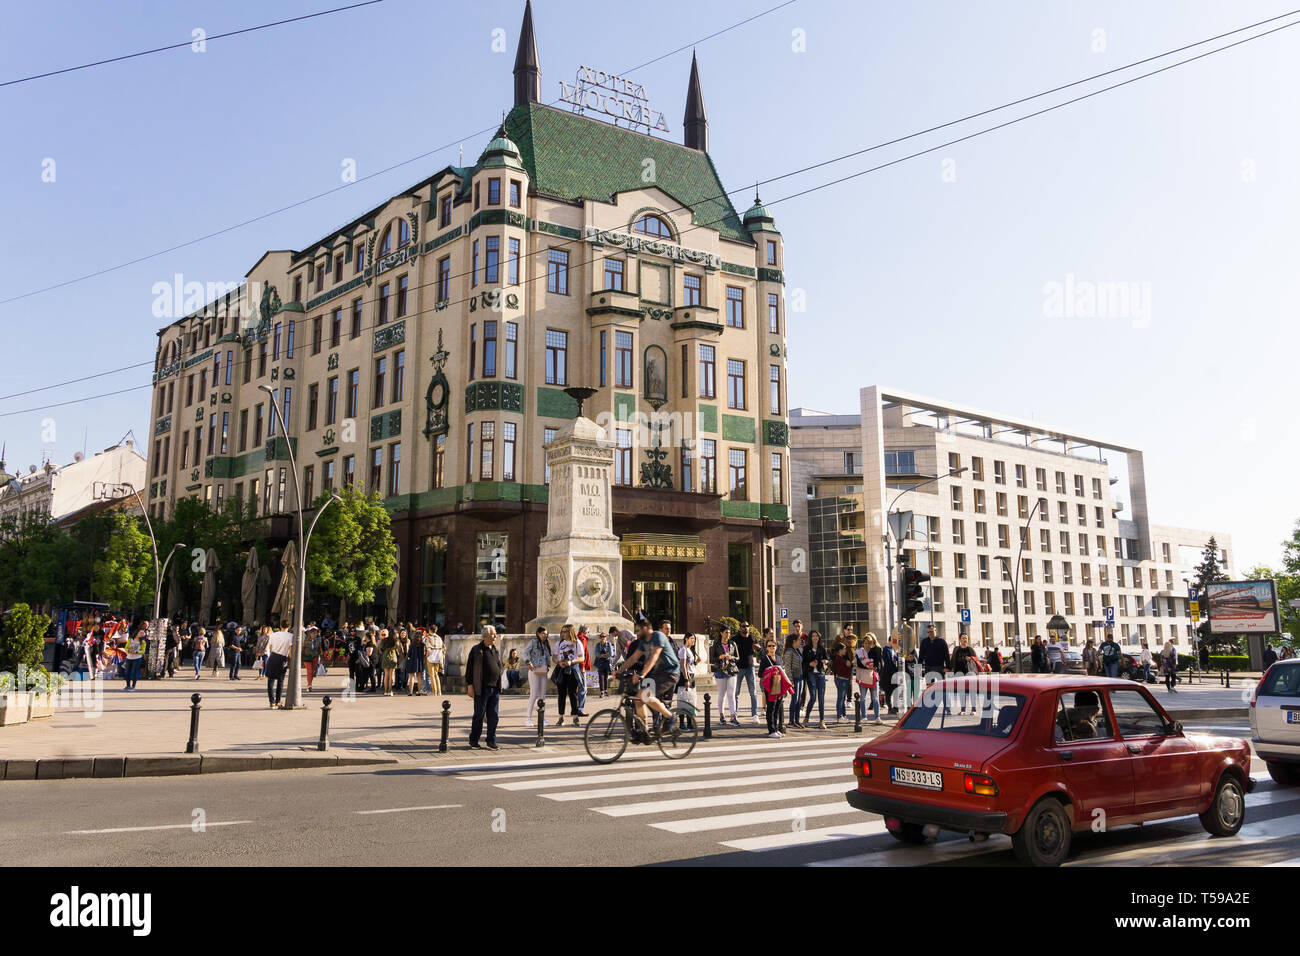 The Hotel Moskva in Terazije square in the Belgrade city center, Serbia. Stock Photo